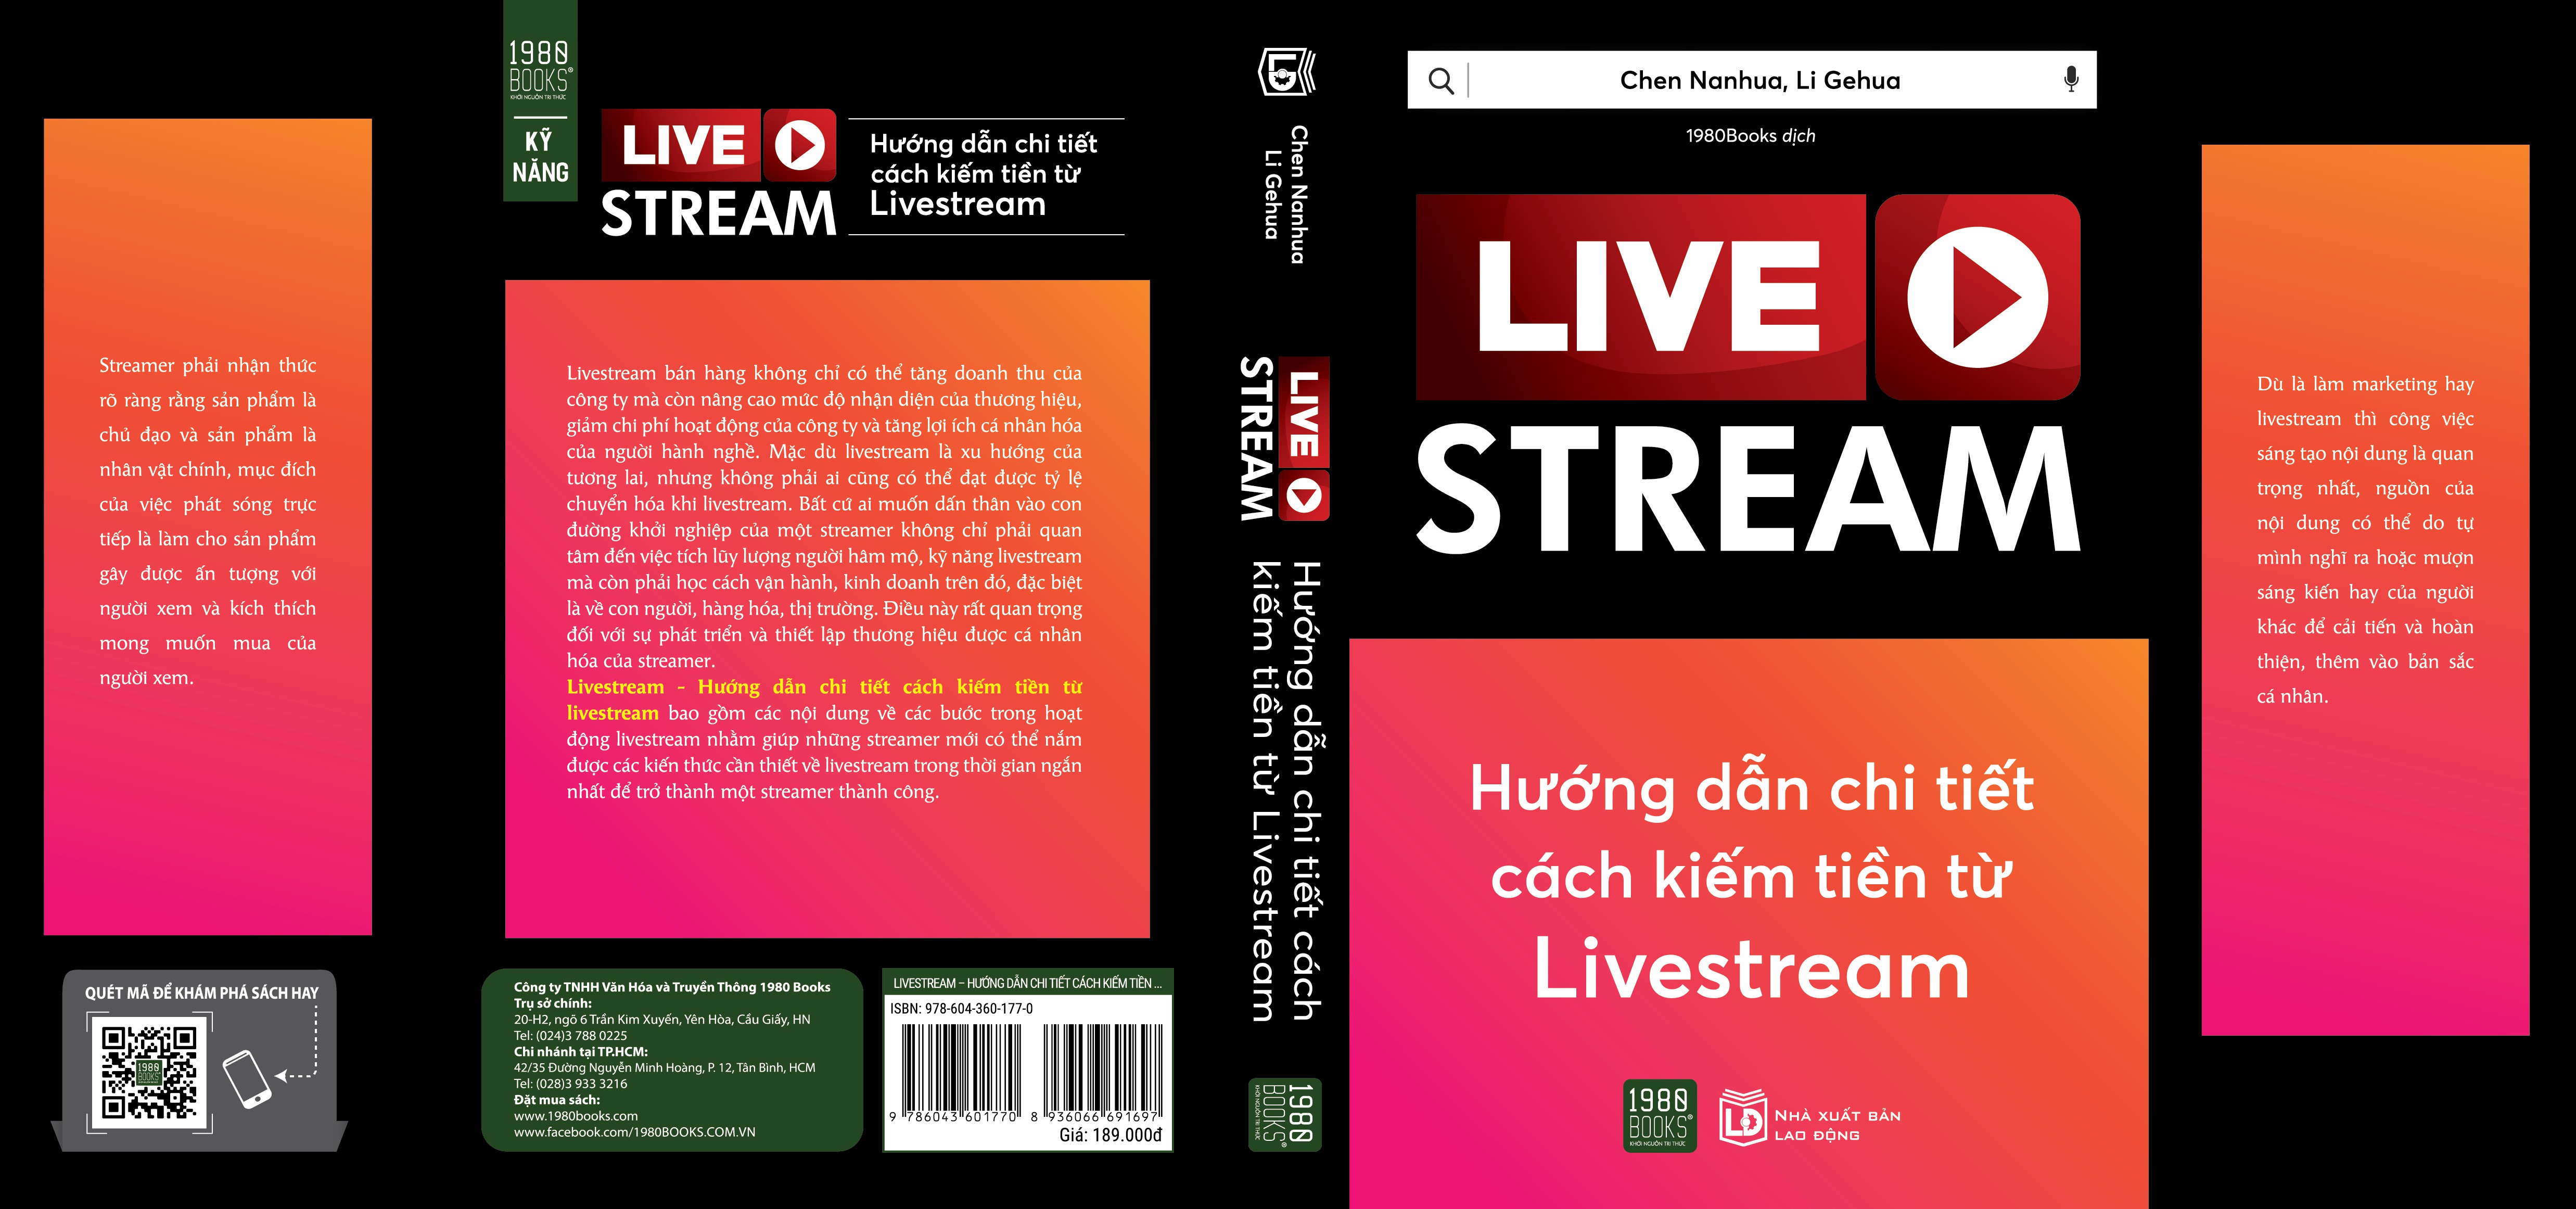 Hướng dẫn chi tiết cách kiếm tiền từ livestream - Chen Nanhua, Li Gehua